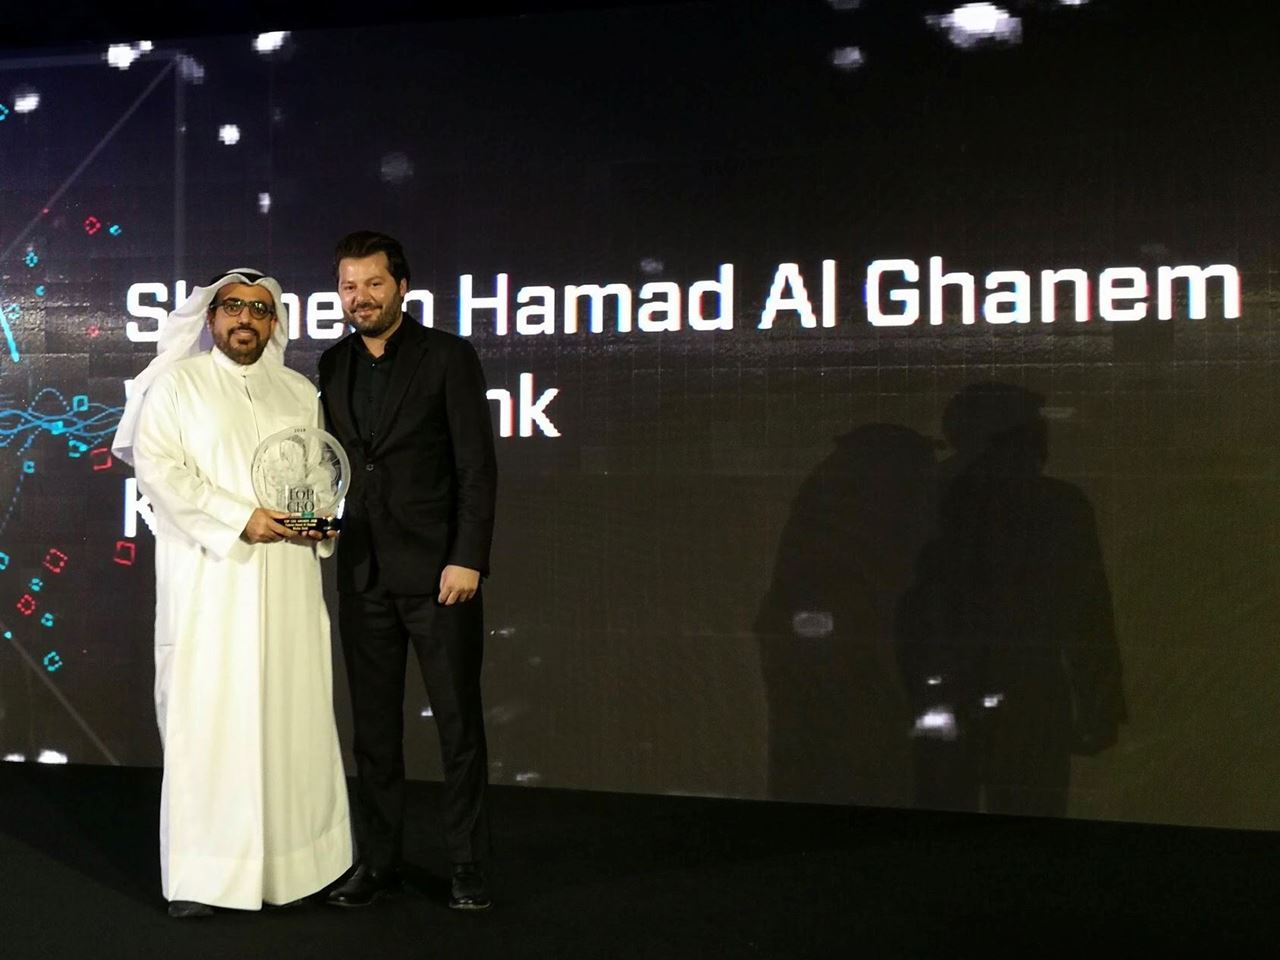 الرئيس التنفيذي لبنك وربة: شاهين حمد الغانم، من ضمن لائحة جائزة "أفضل رئيس تنفيذي" لعام 2017